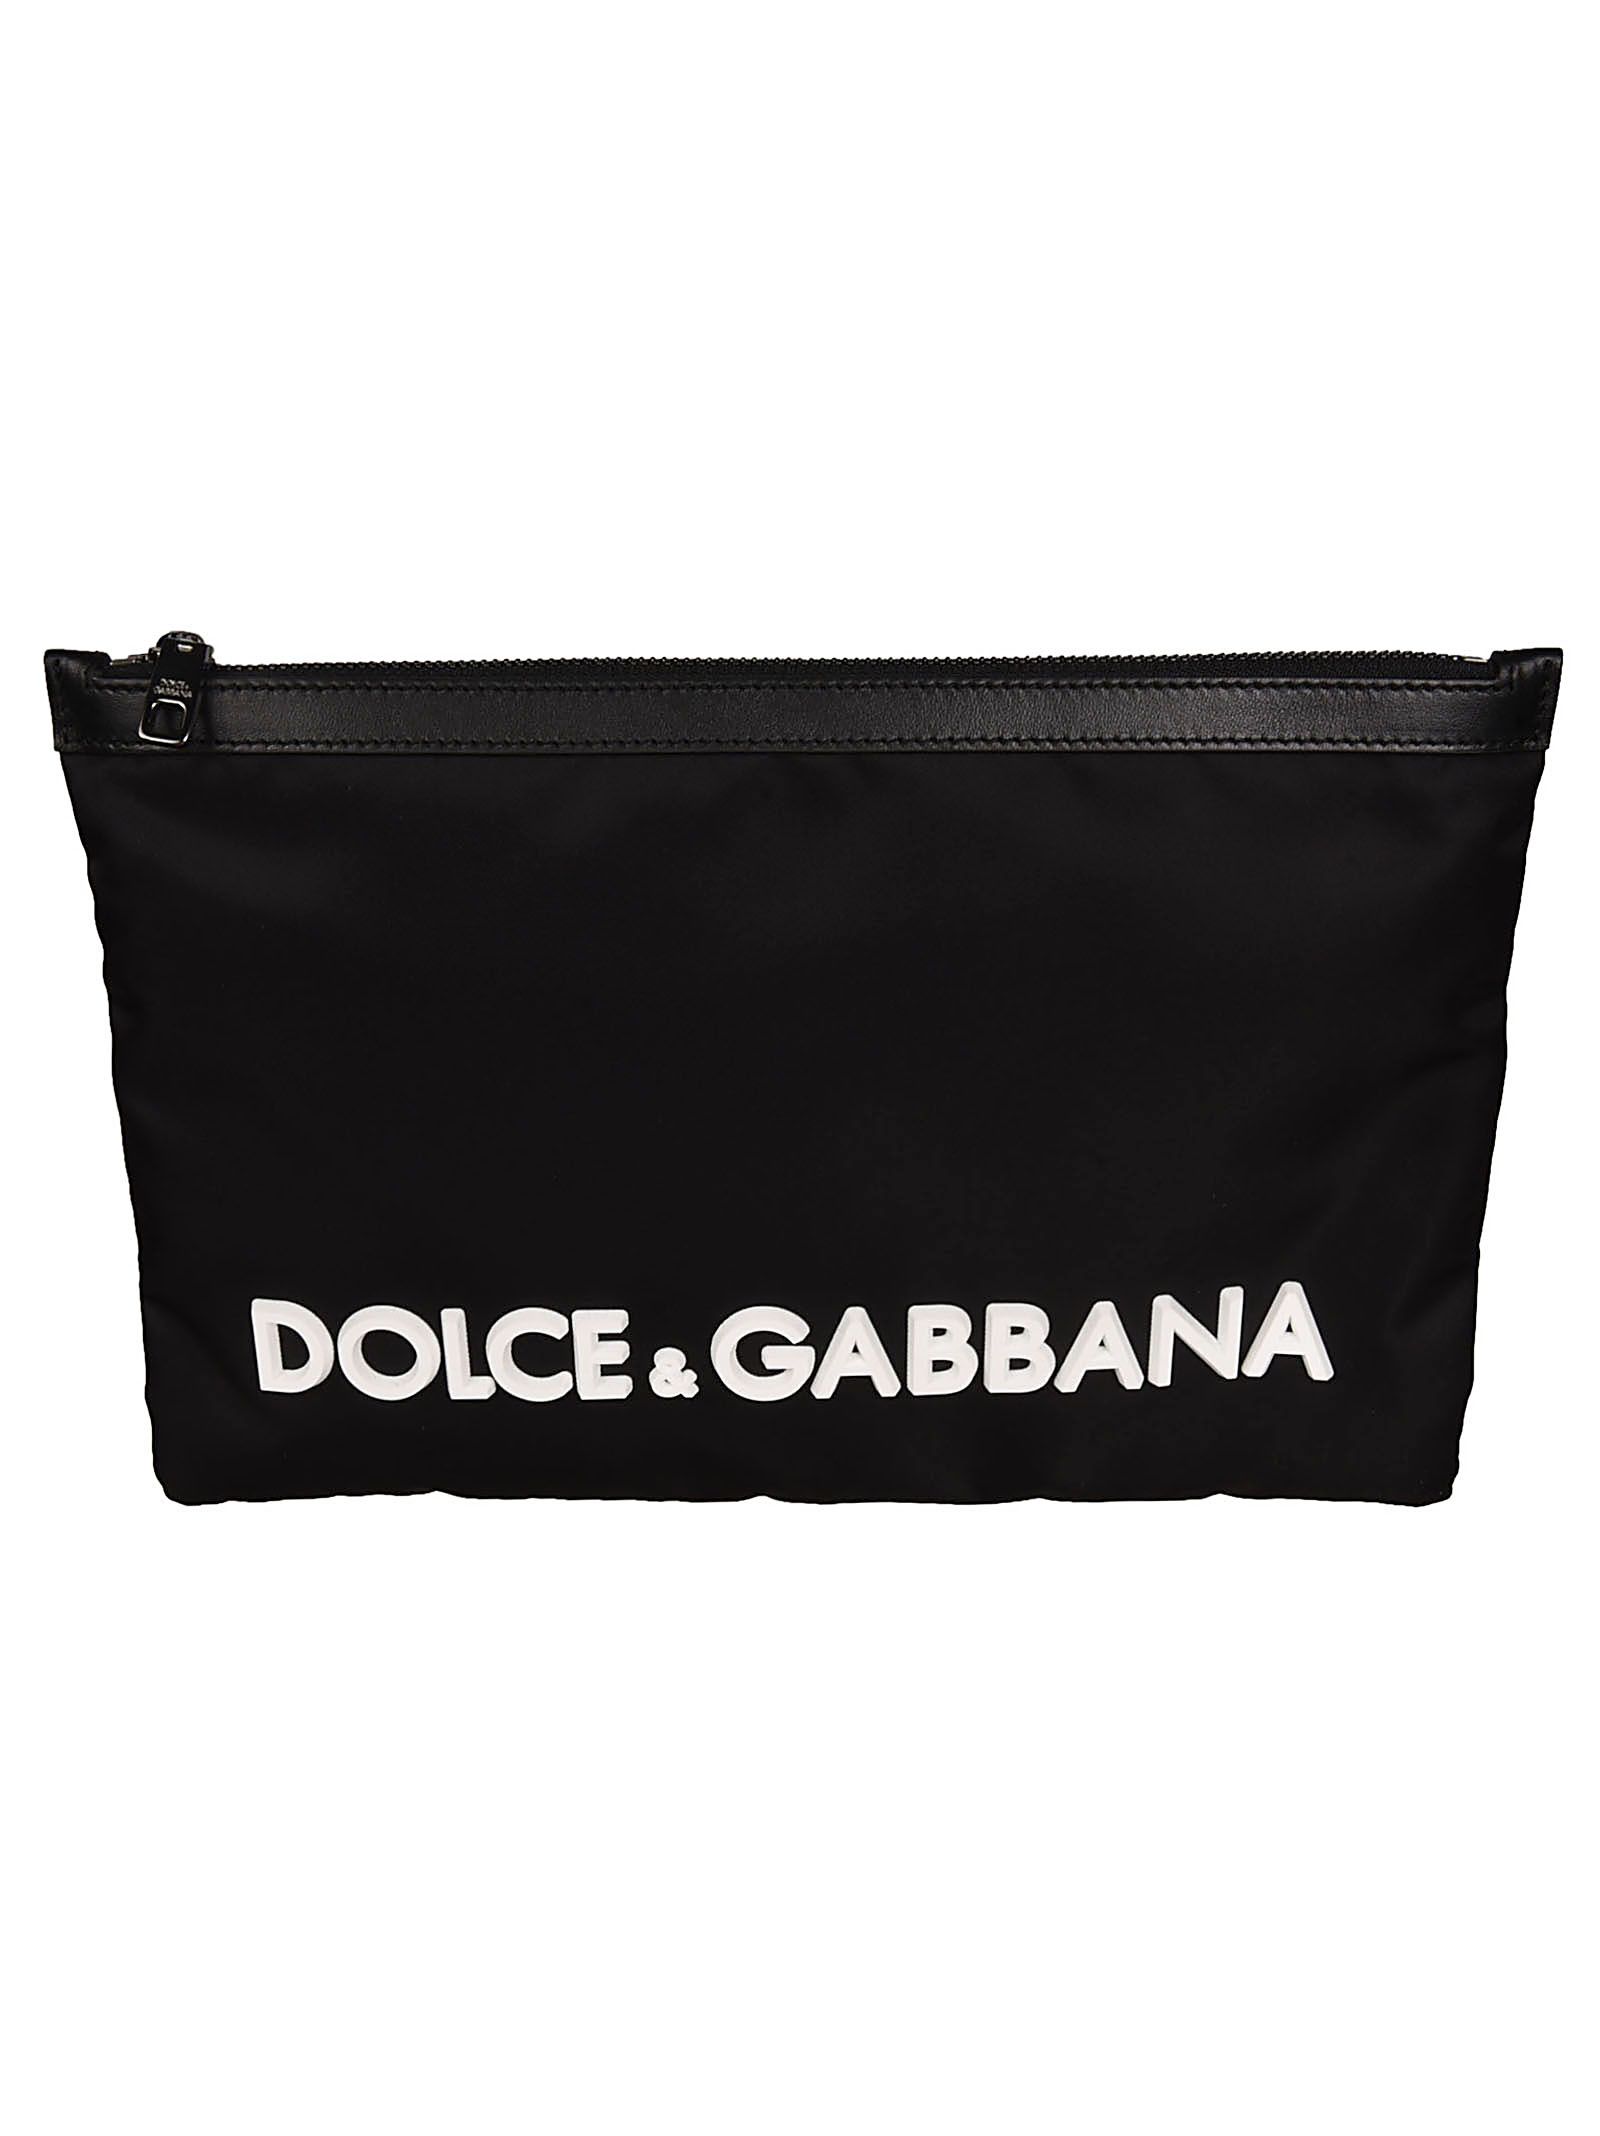 DOLCE & GABBANA LOGO CLUTCH BAG,10855067